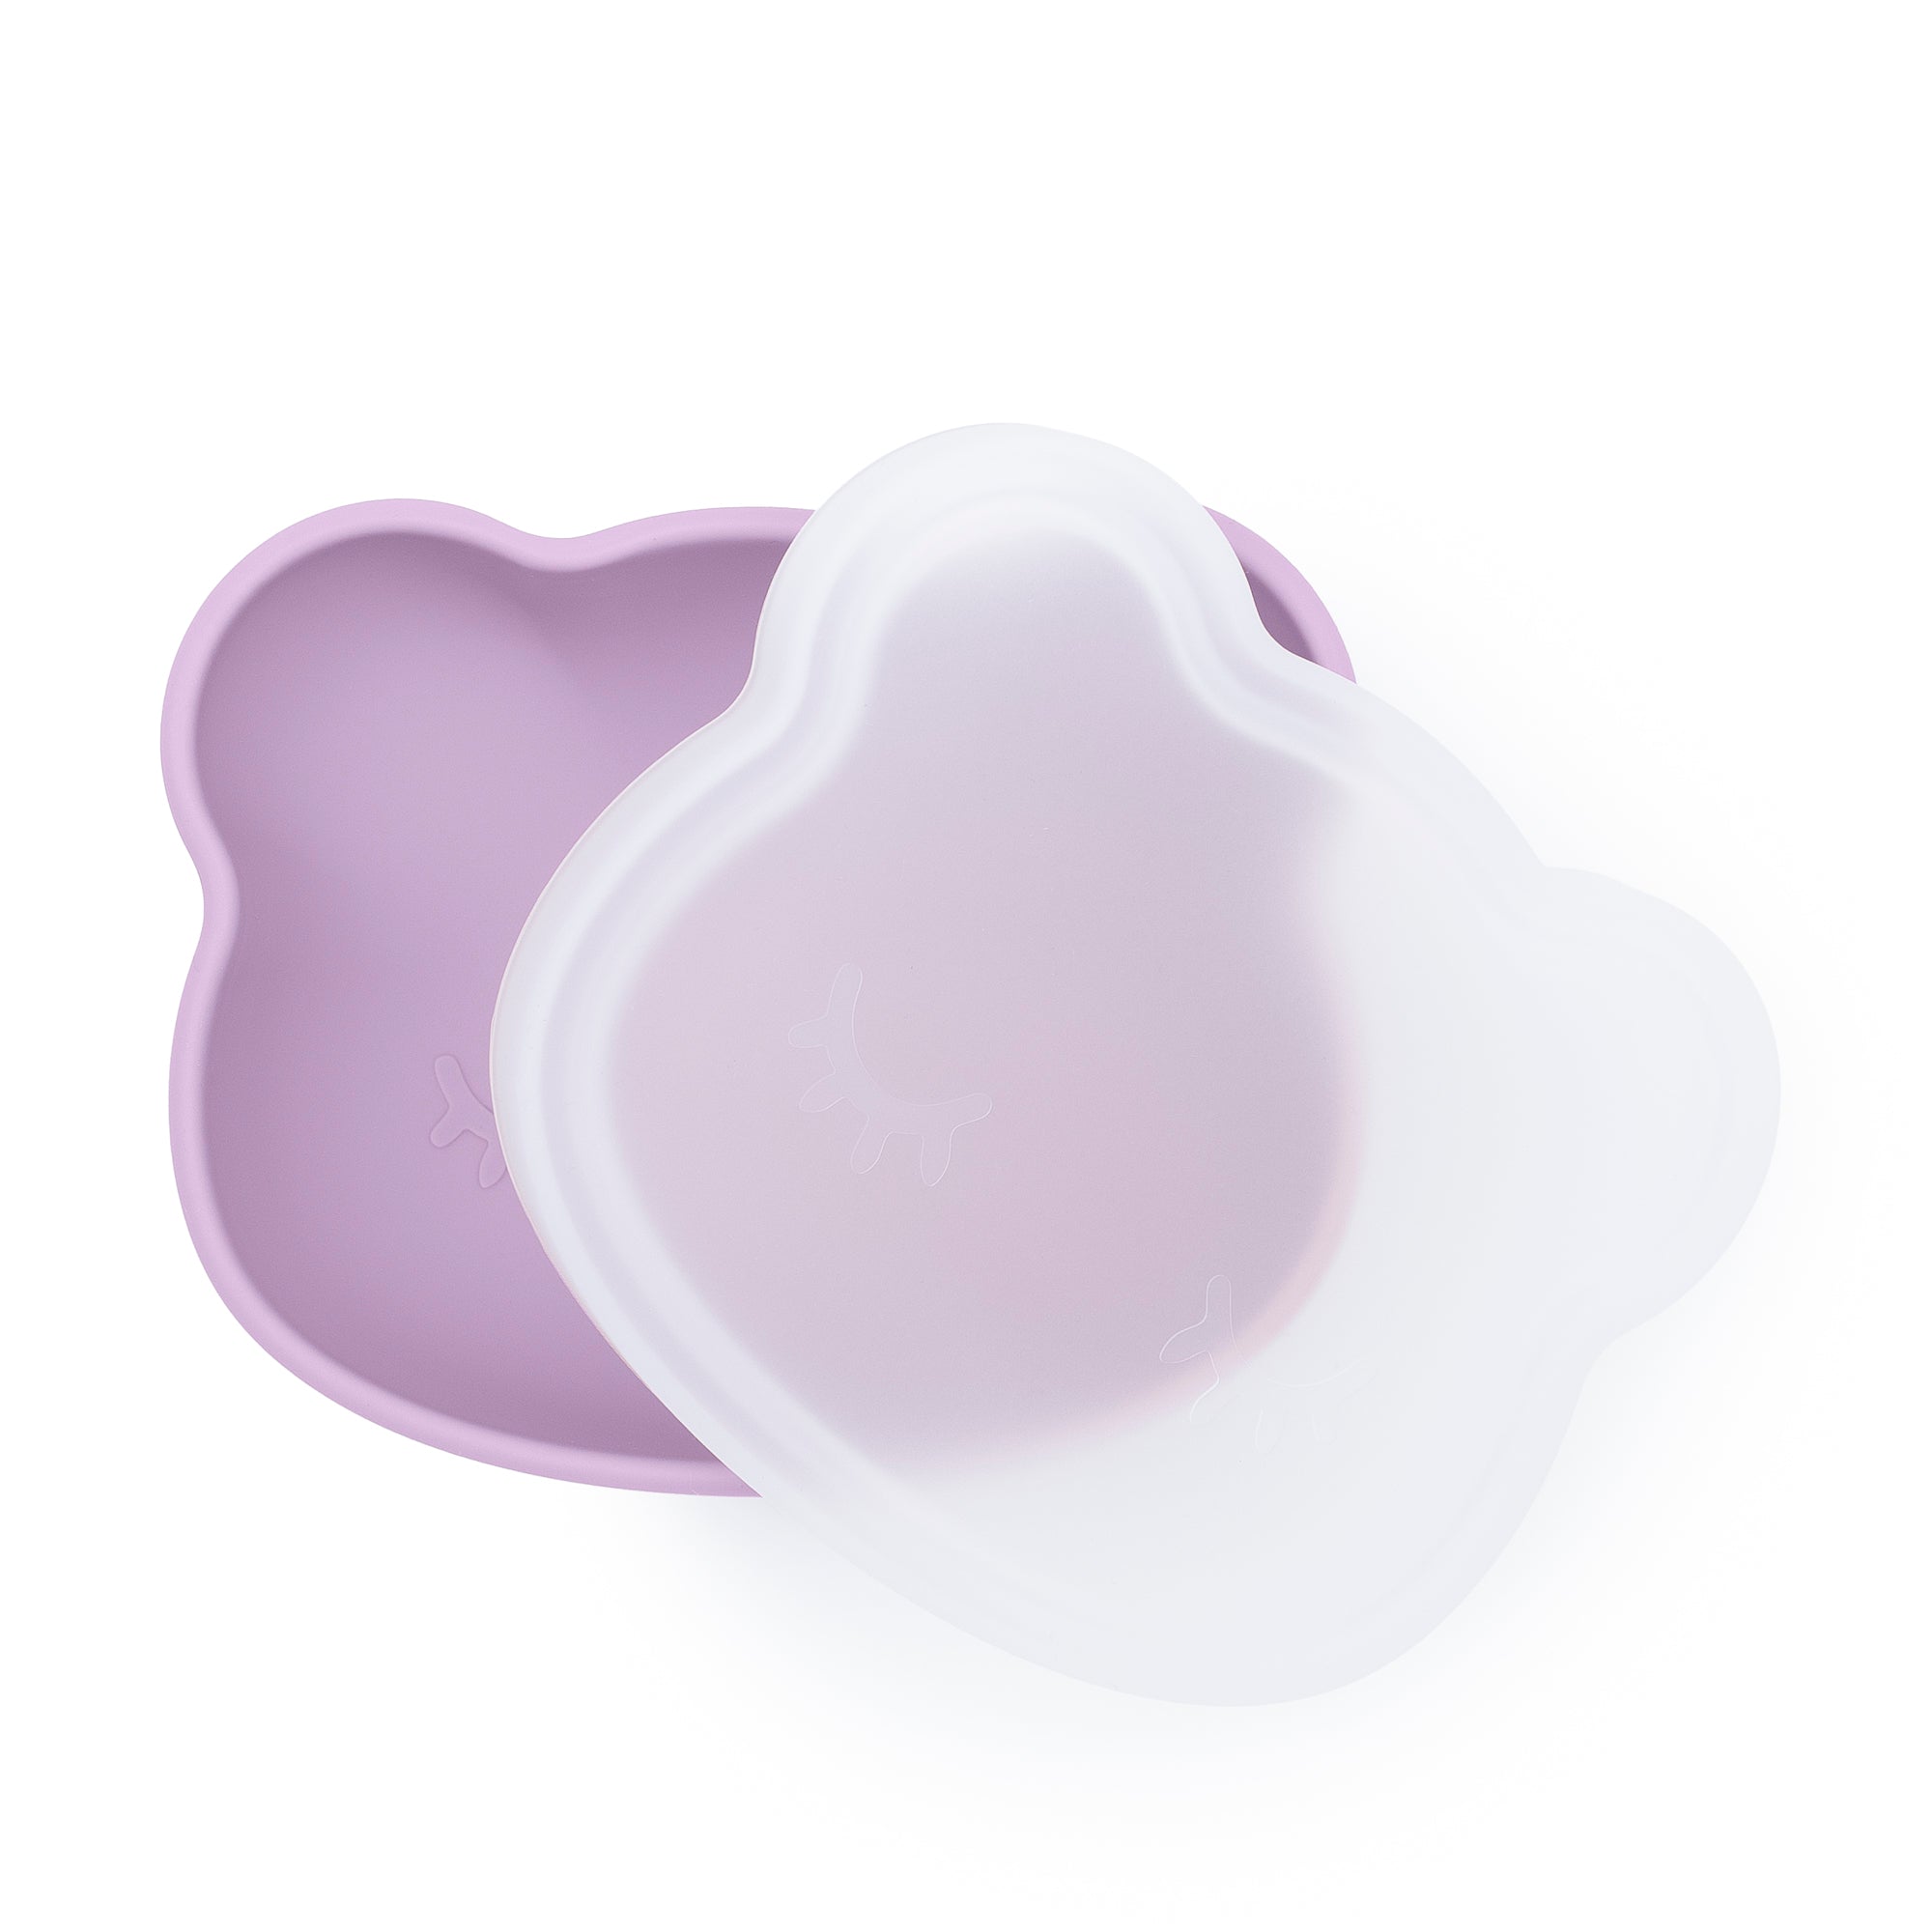 Stickie® Bowl - Lilac